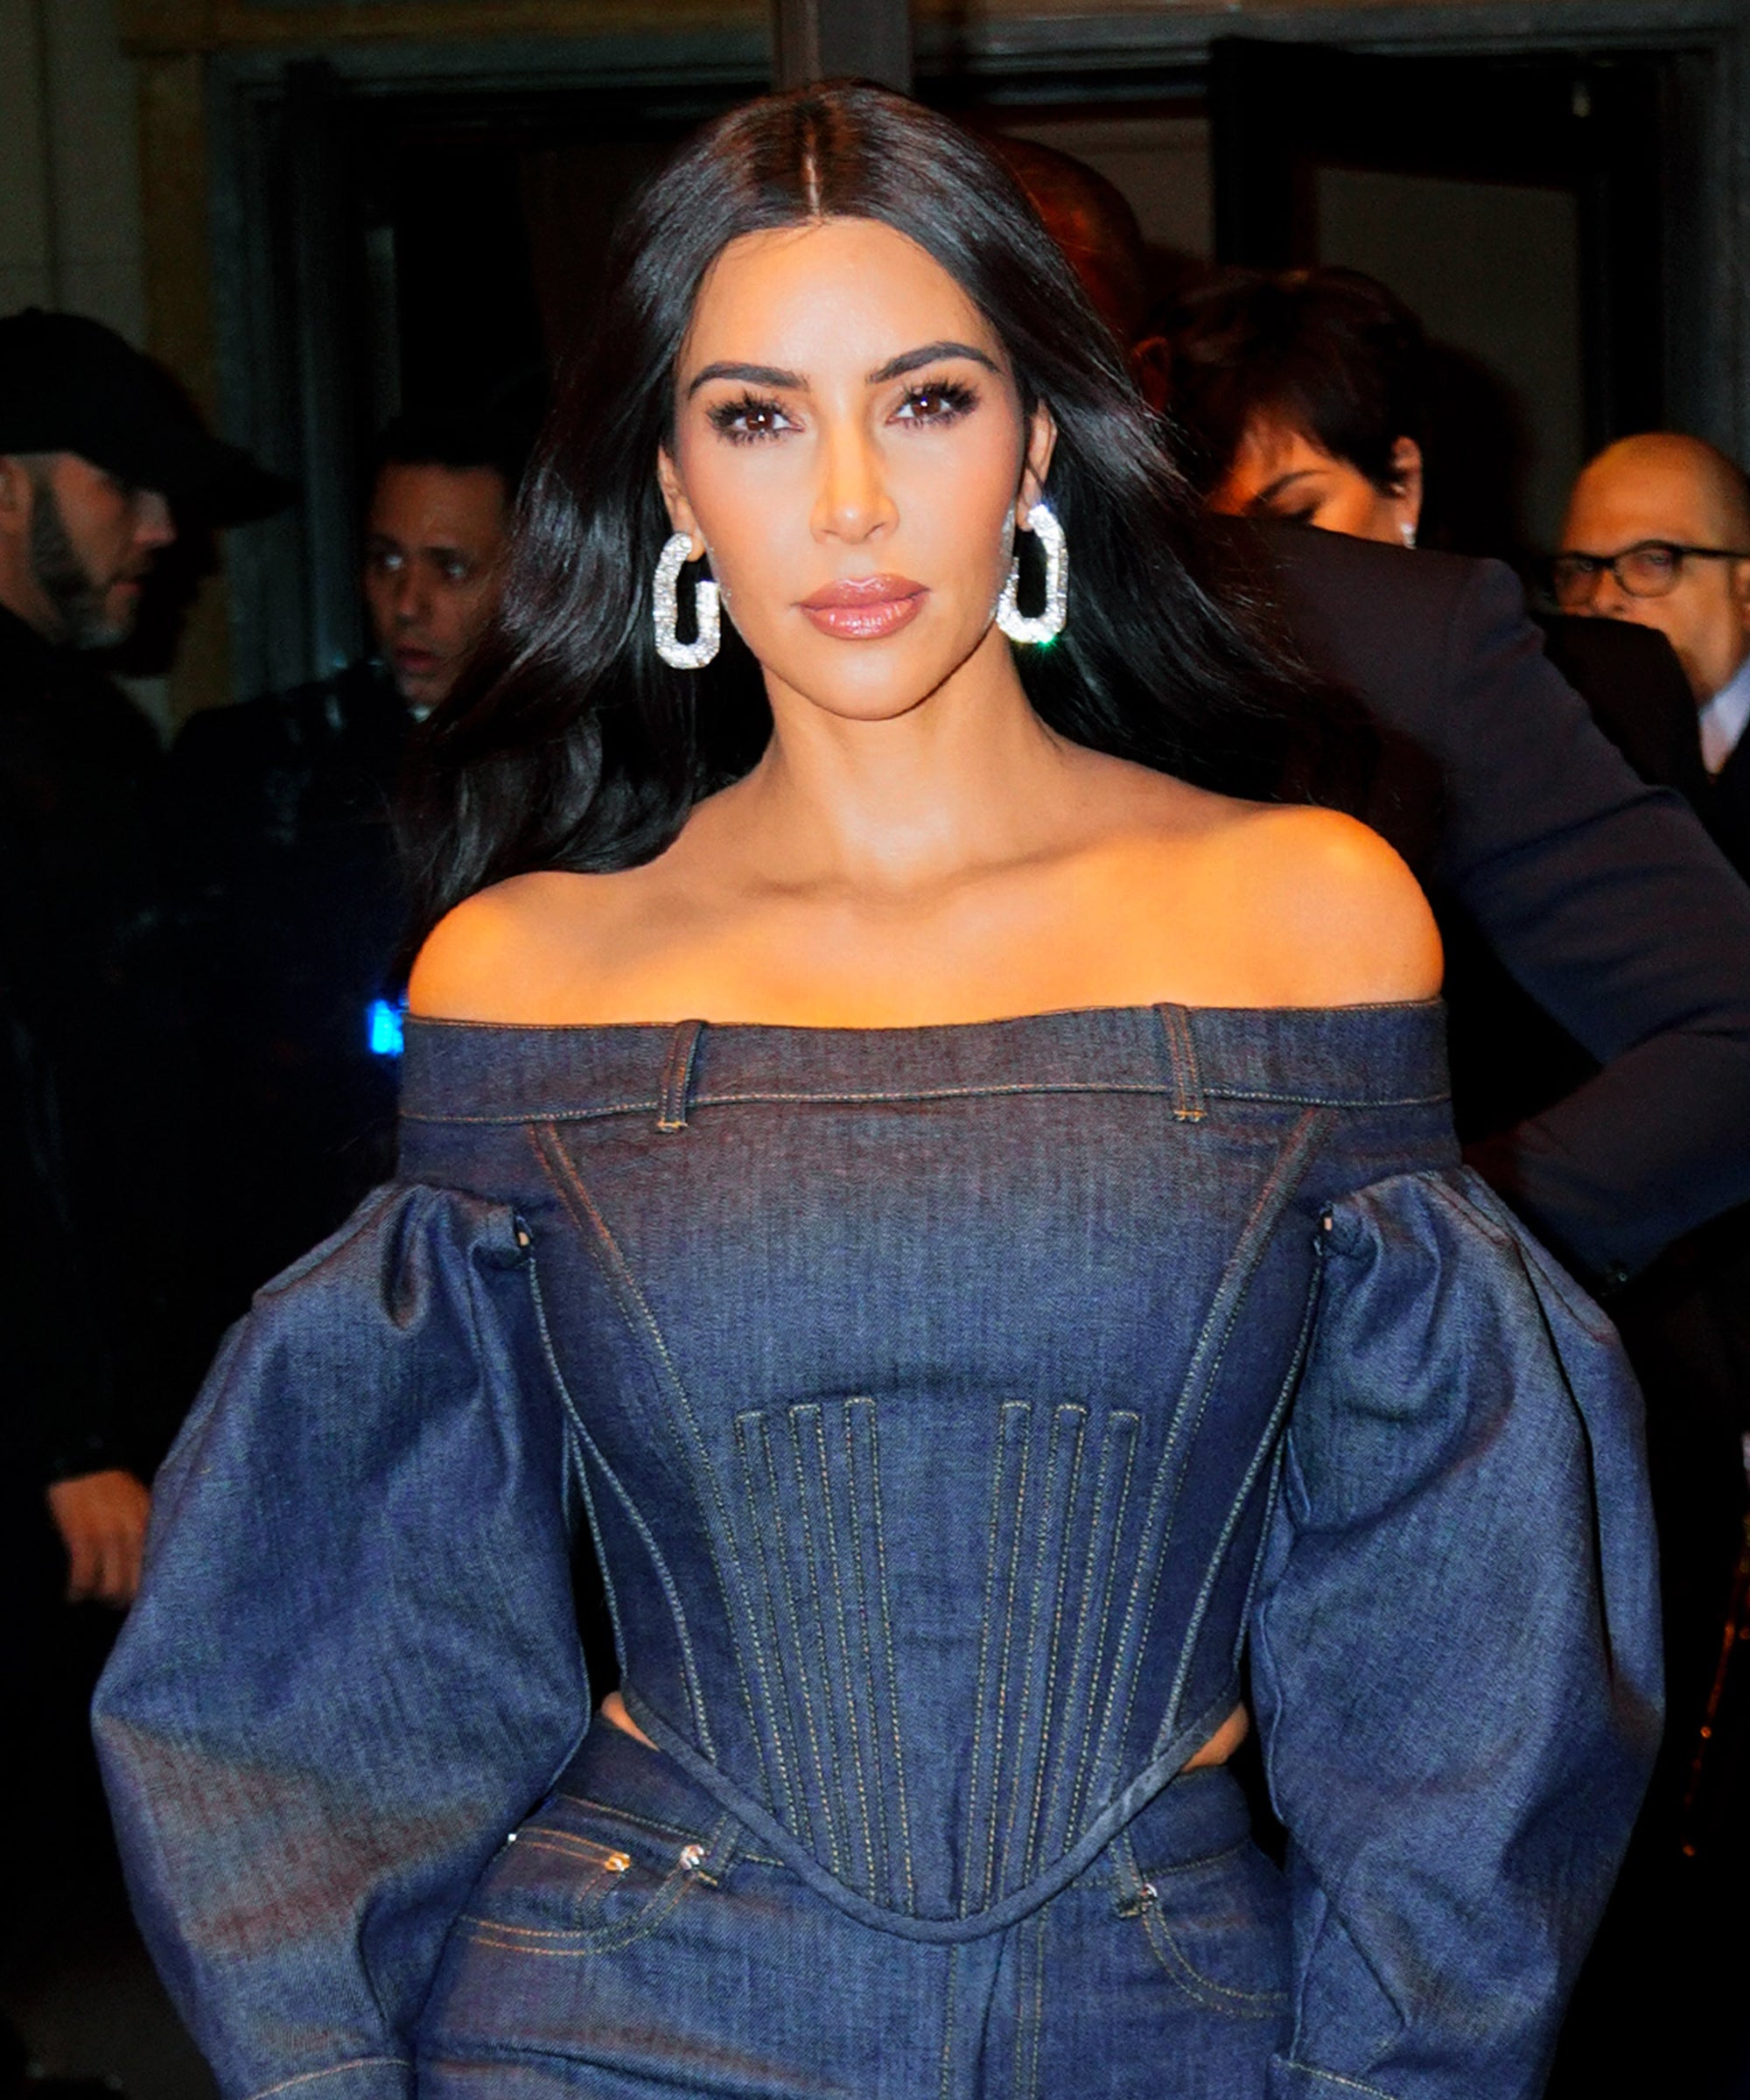 Why Kim Kardashian West thinks taking away Instagram 'likes' would